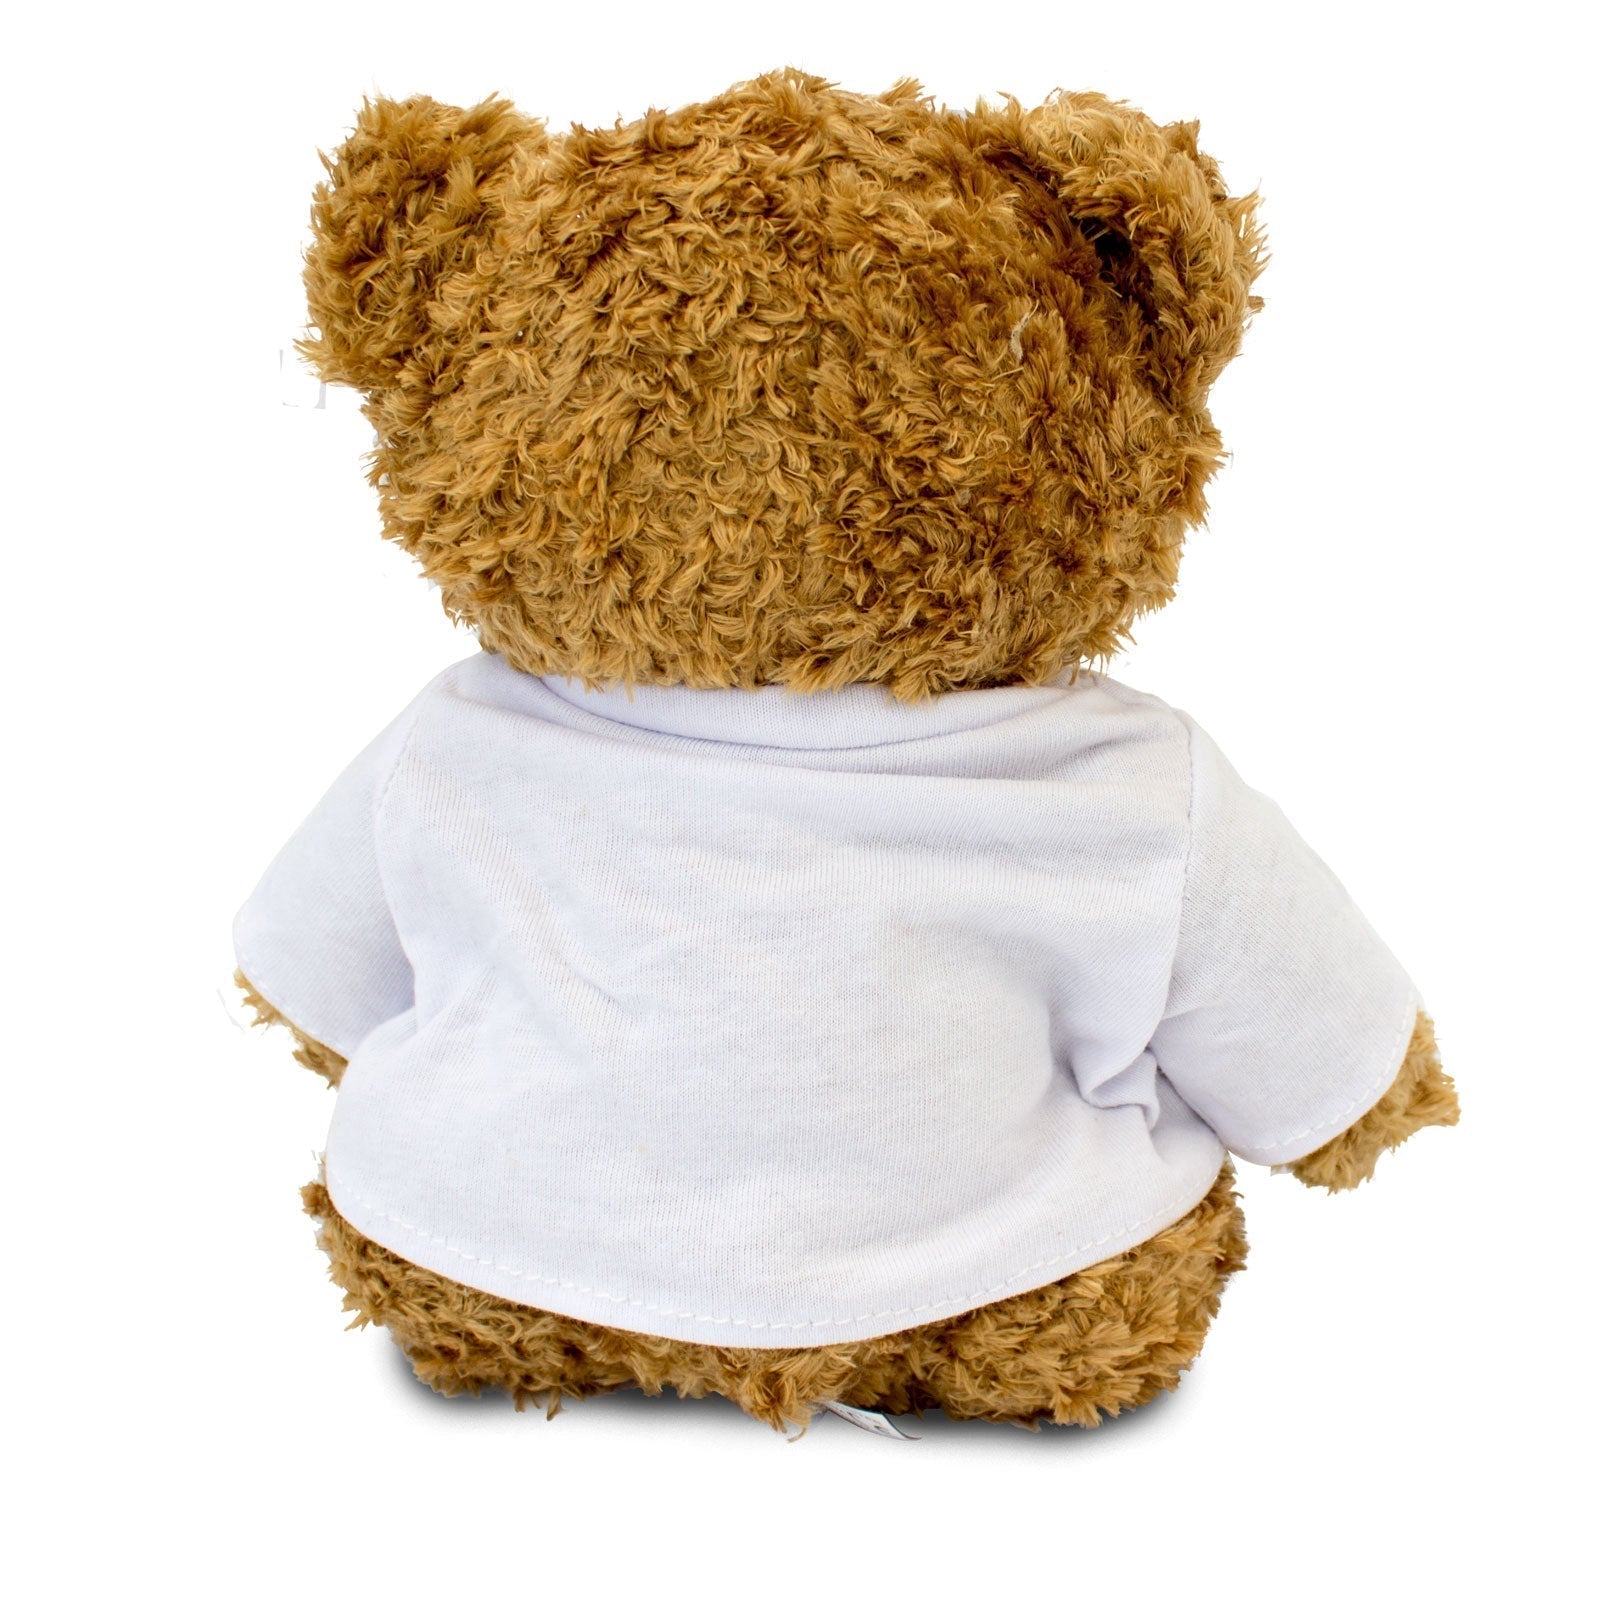 The Greatest Paediatrician Ever - Teddy Bear